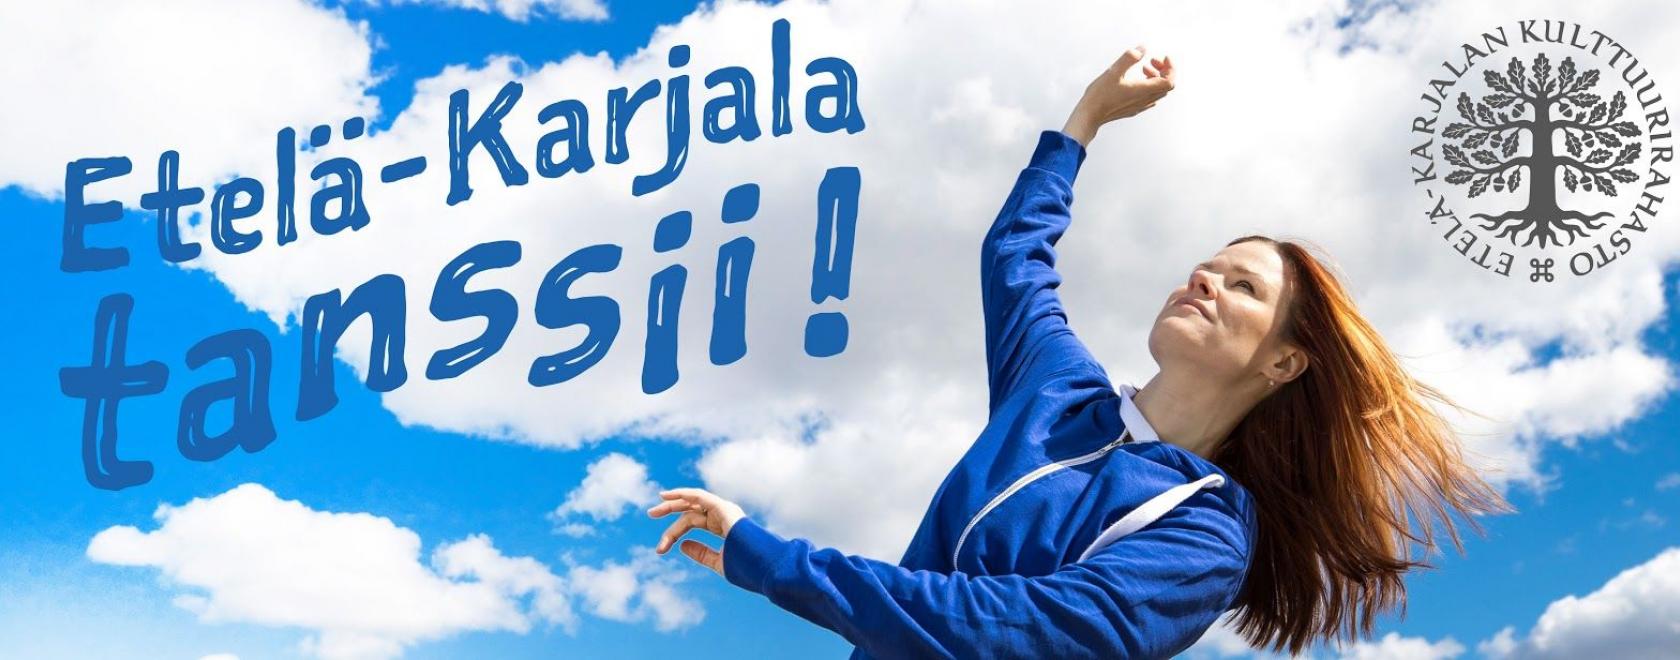 Etelä-Karjalan rahasto käynnisti uuden hankkeen Etelä-Karjala tanssii!